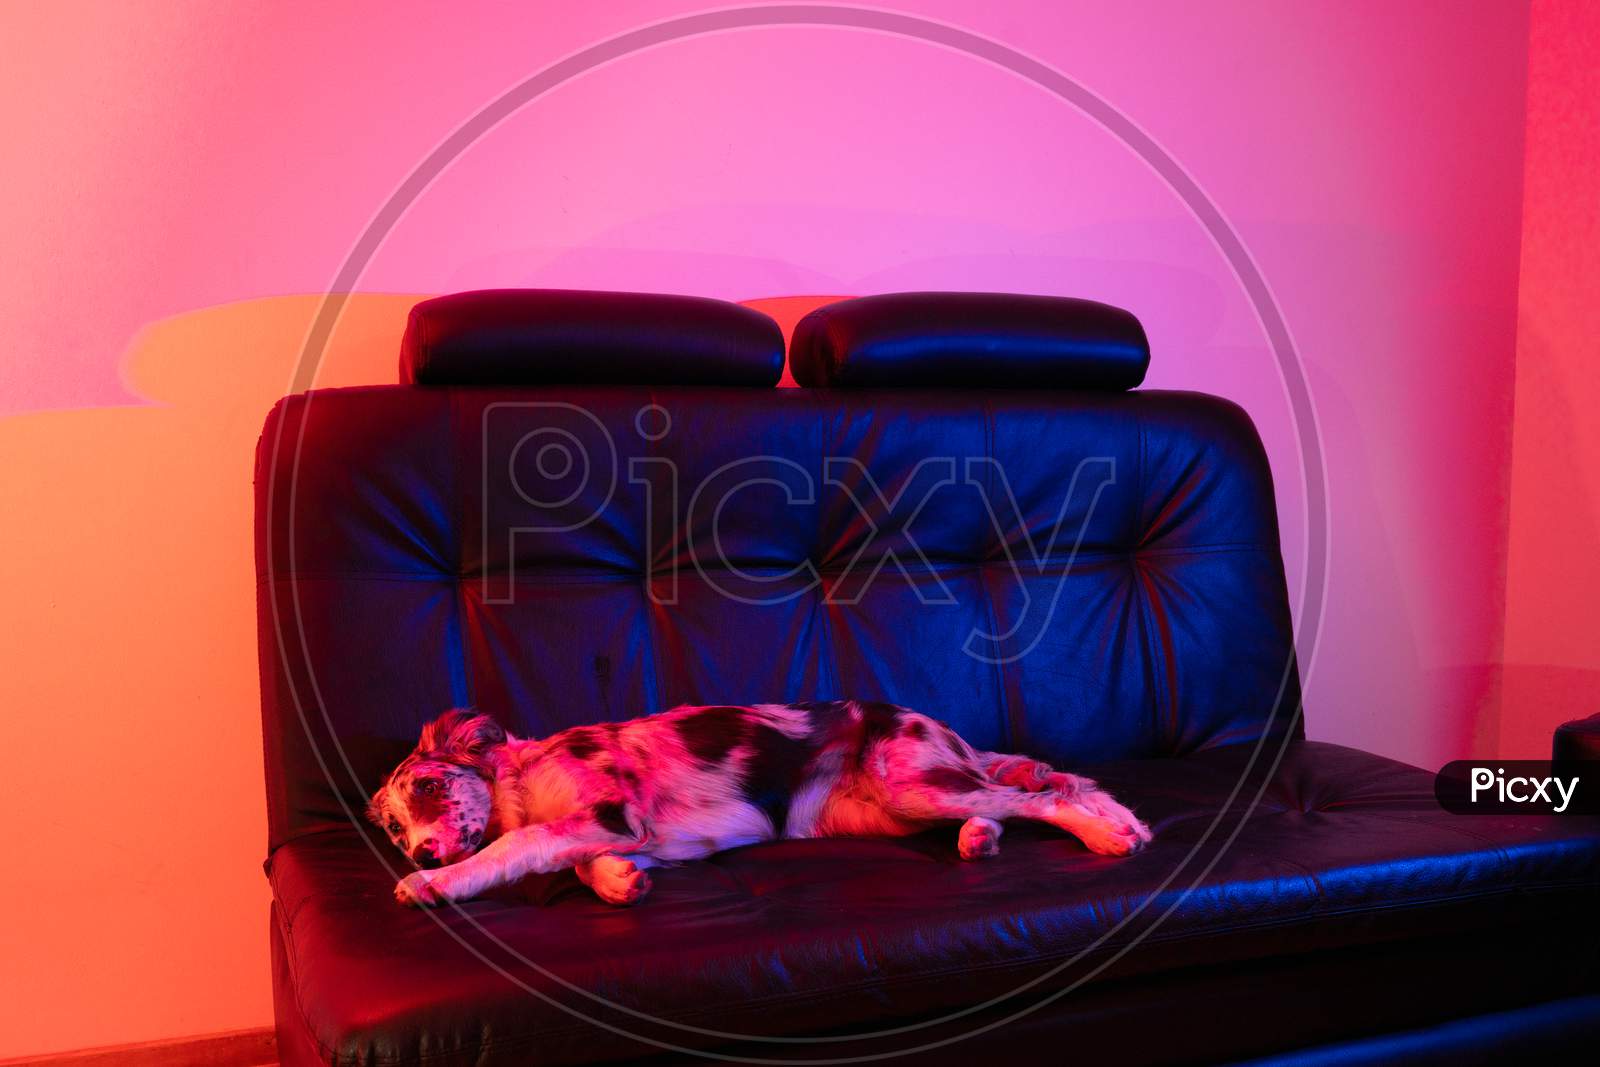 A Dog Sleeping on a Sofa in a House